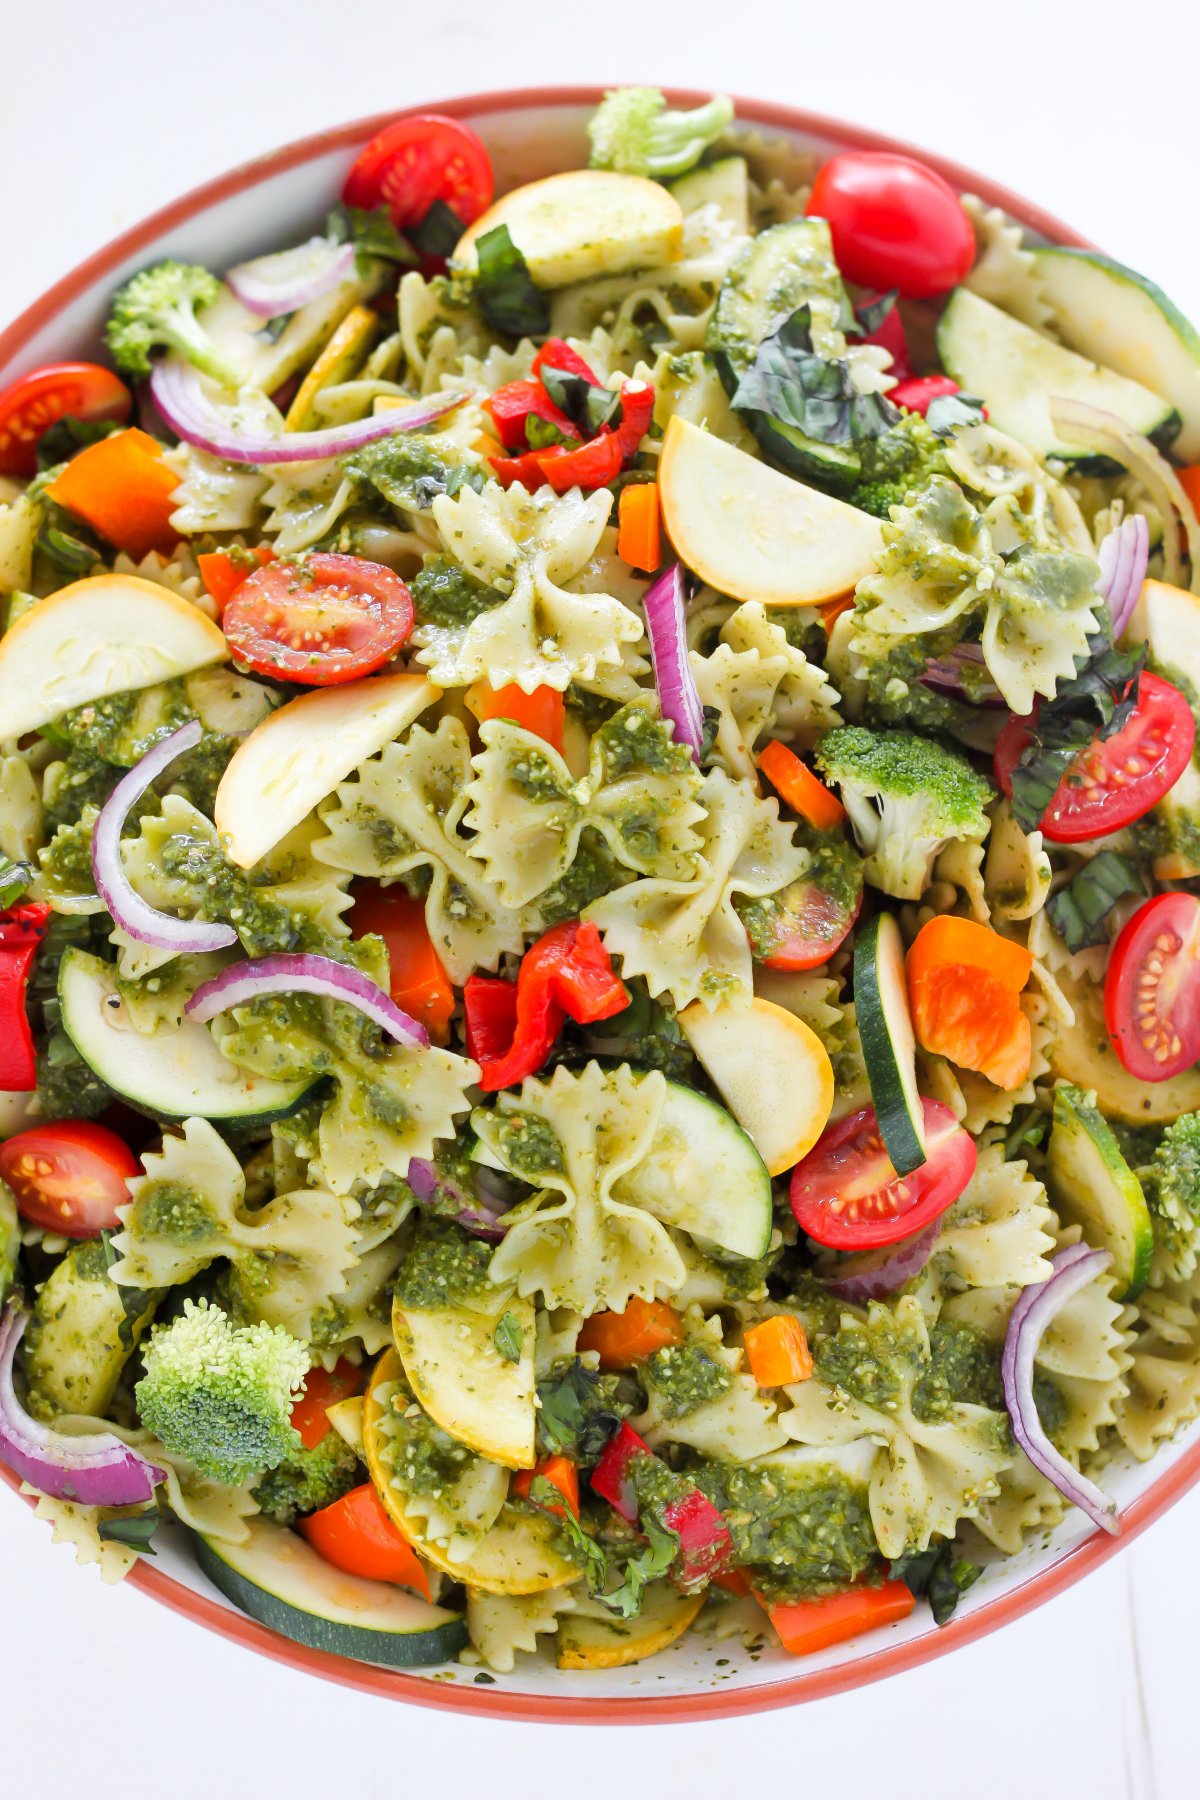 Easy Chicken Pasta Salad Healthy Main Dish Pasta Salad Recipe